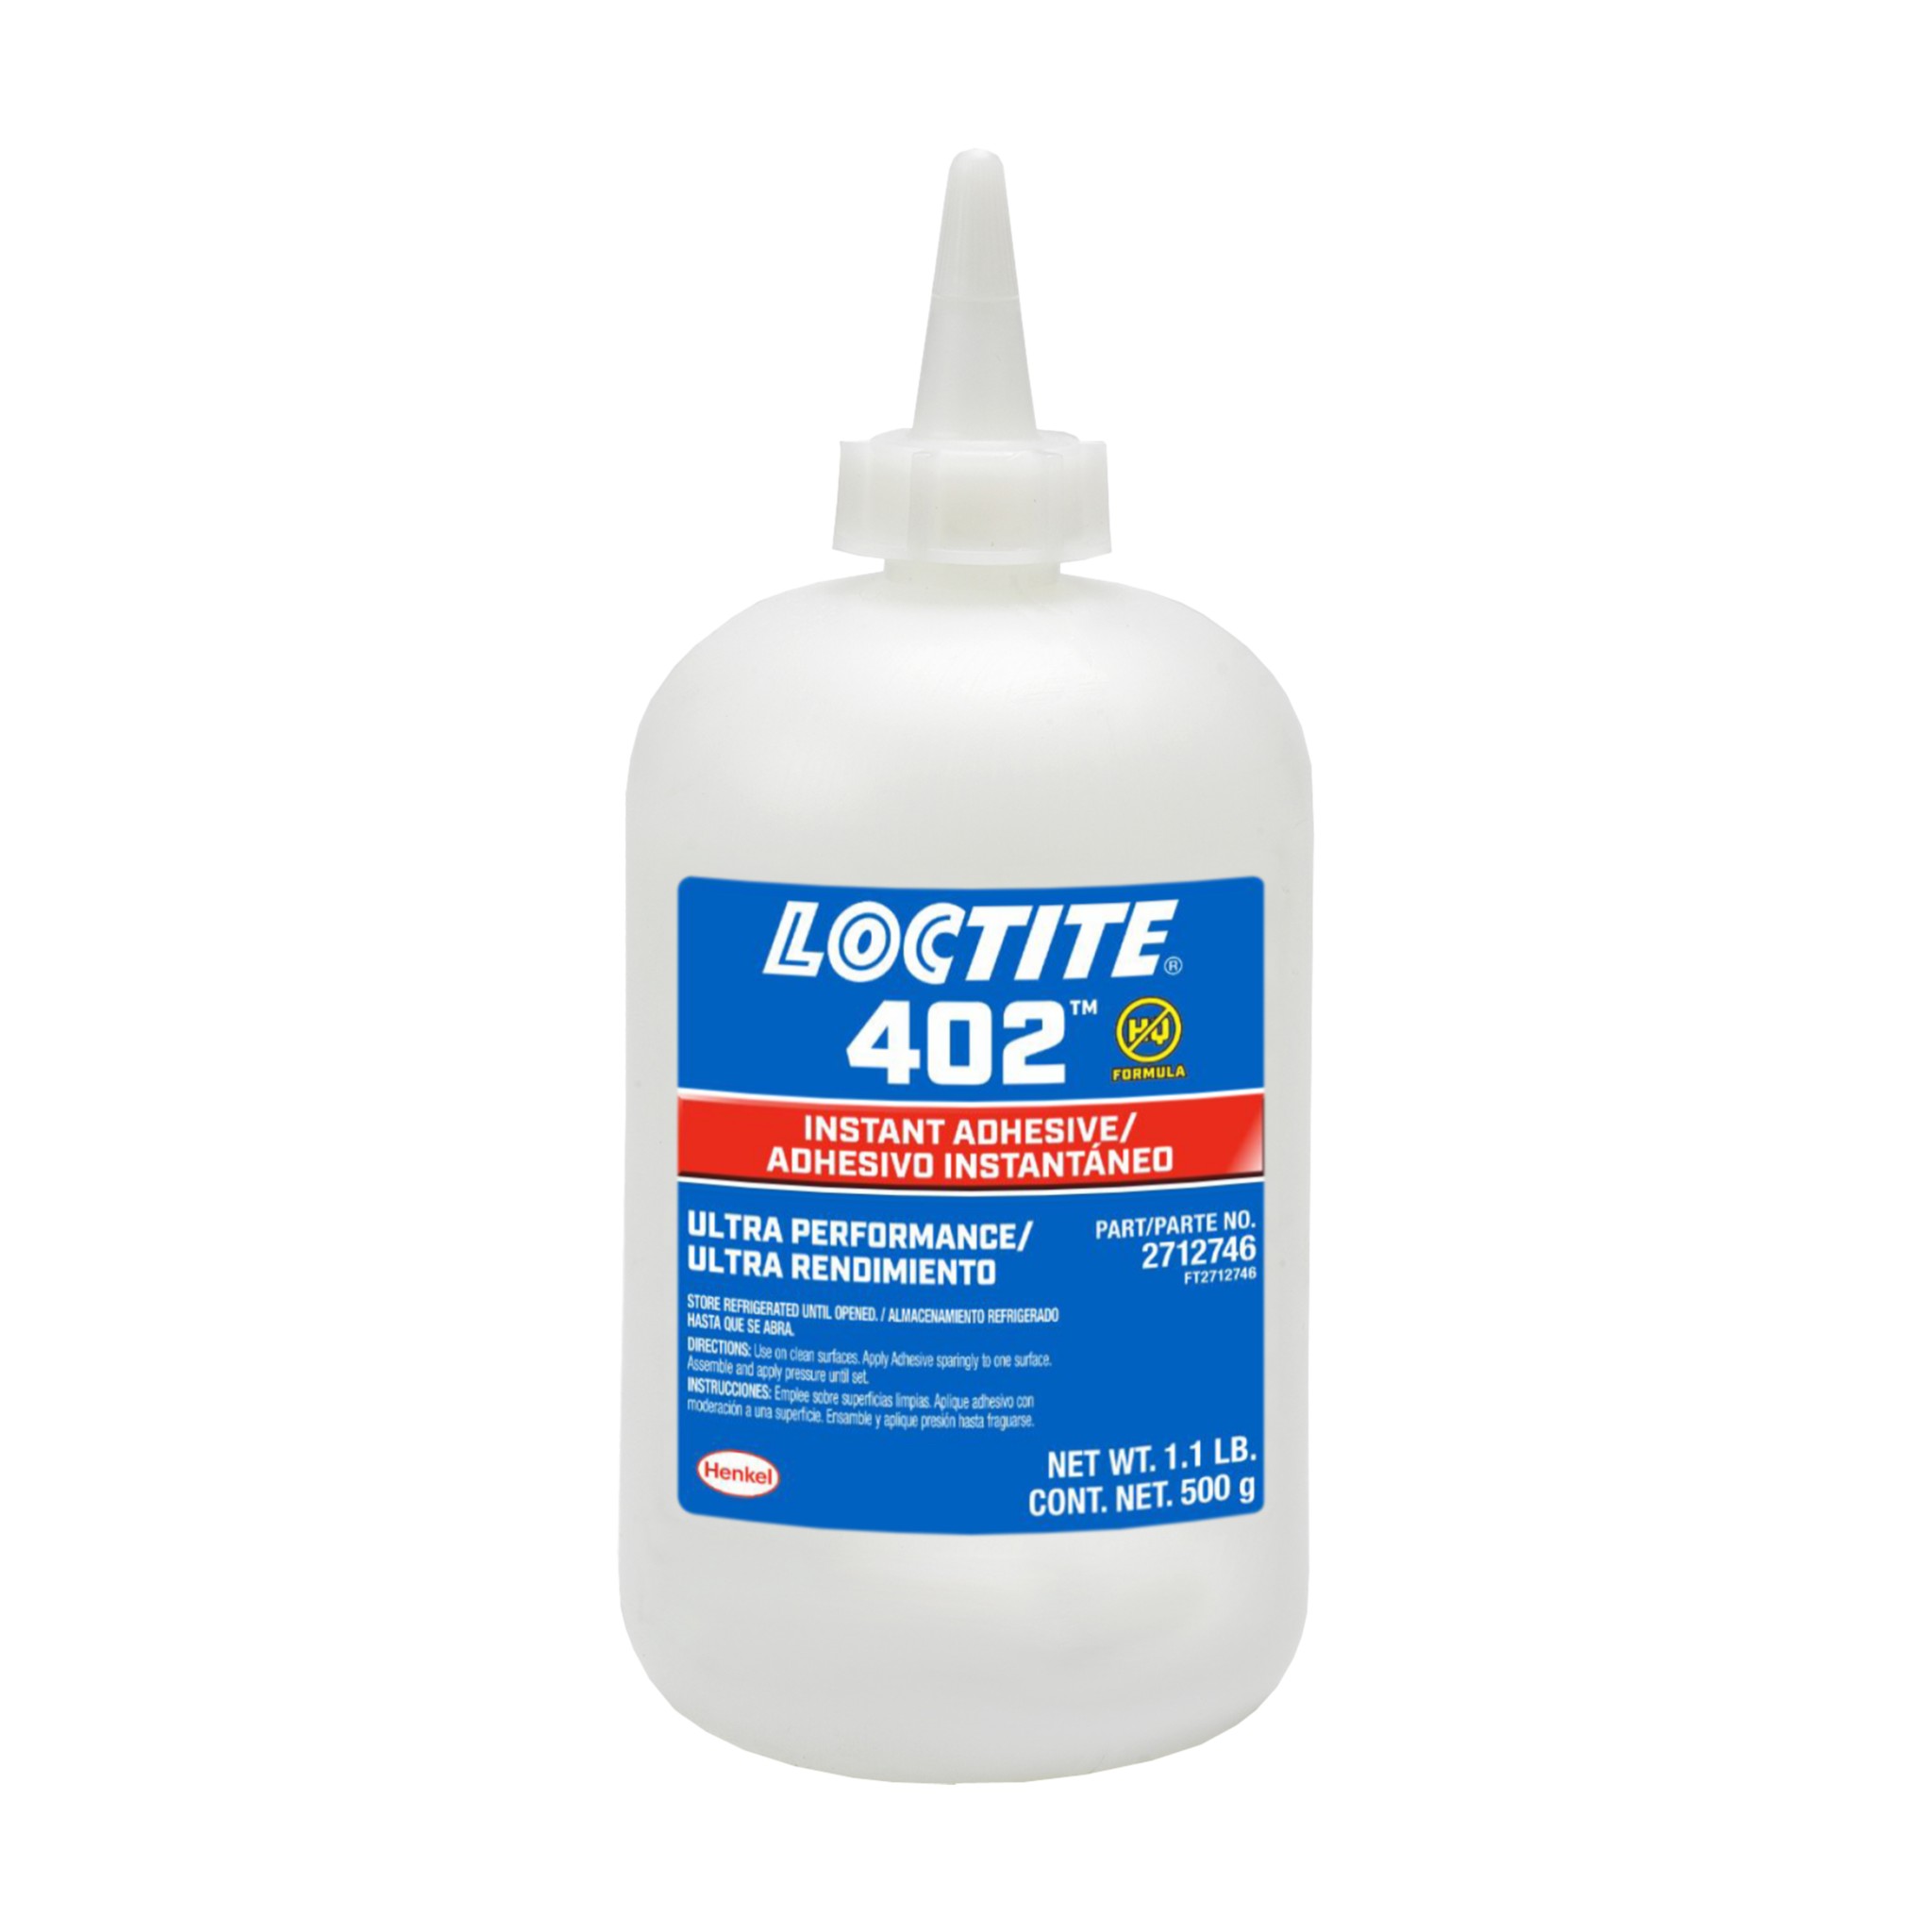 Loctite Instant Adhesive, 401, Prism, 20 Gram Bottle